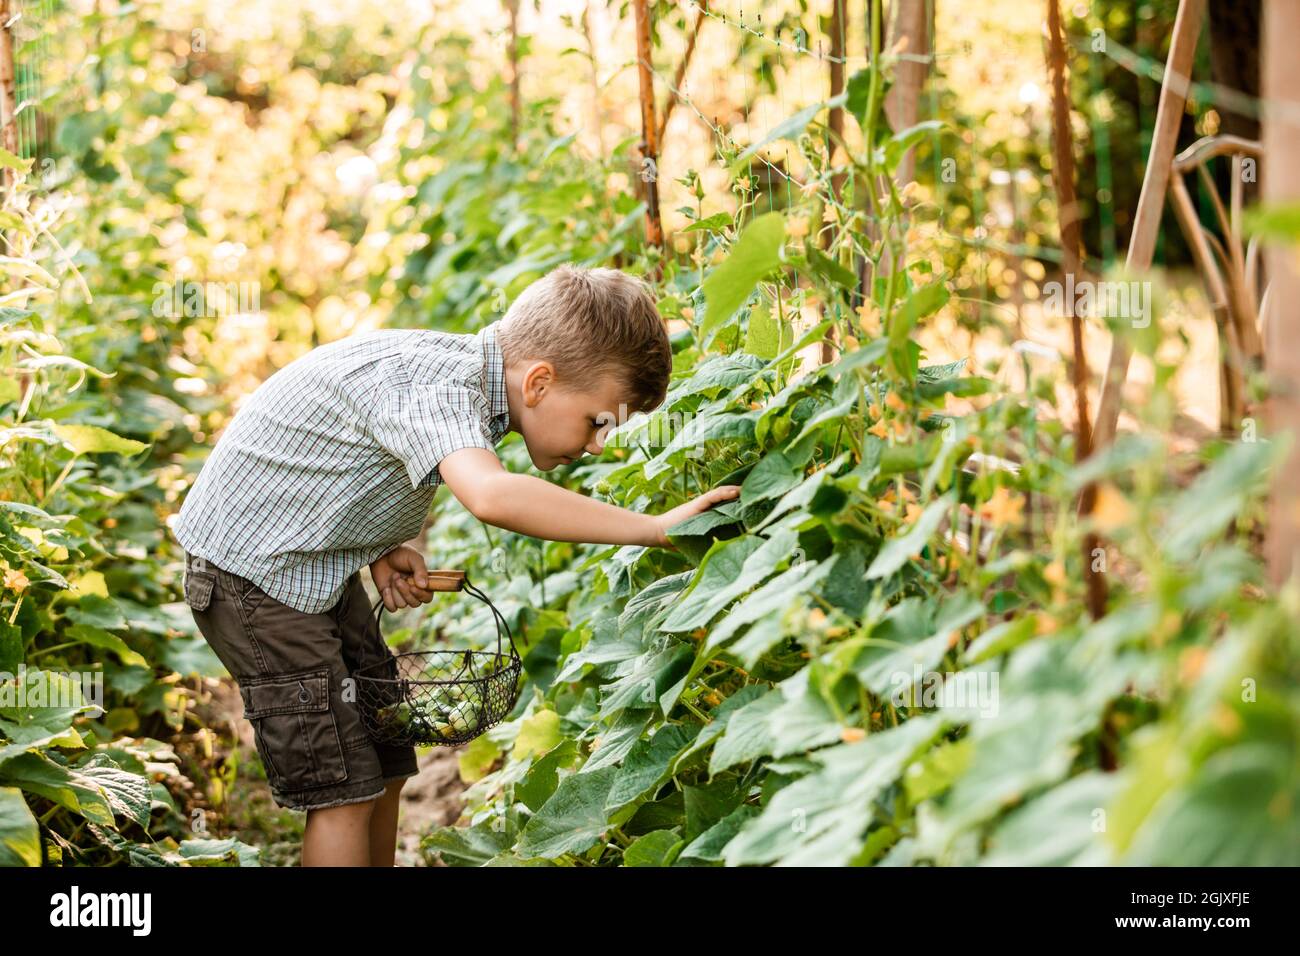 Der kleine Junge sammelt sorgfältig Gurken im Gartenbett Stockfoto